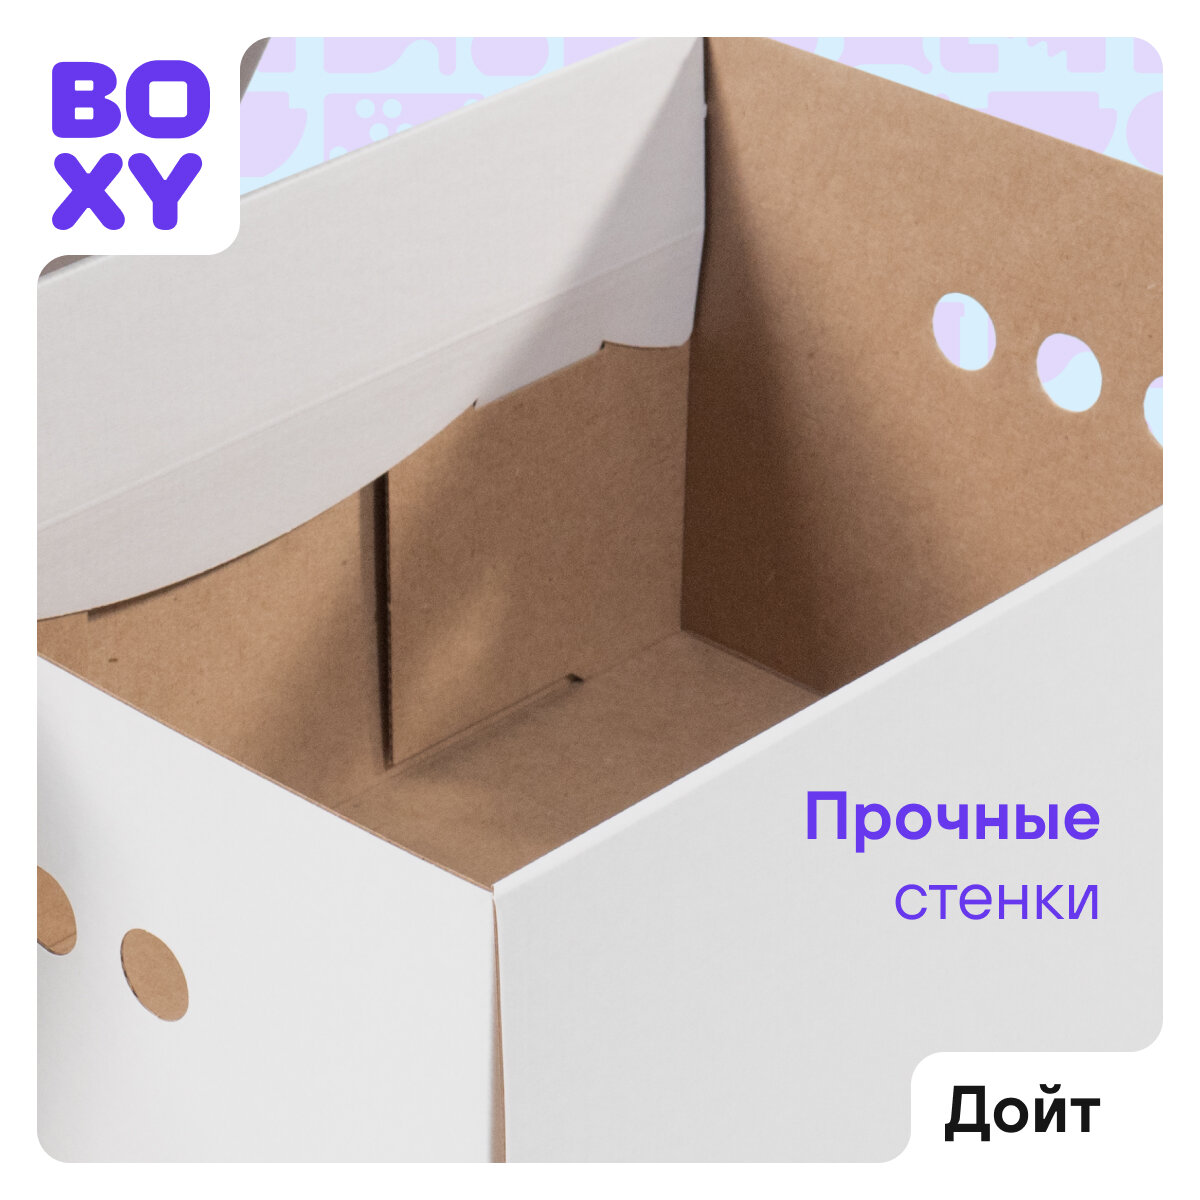 Коробка для интерьера и организации хранения вещей BOXY дойт с ручками, гофрокартон, белая, 34х25х18,5 см, в упаковке 5 шт